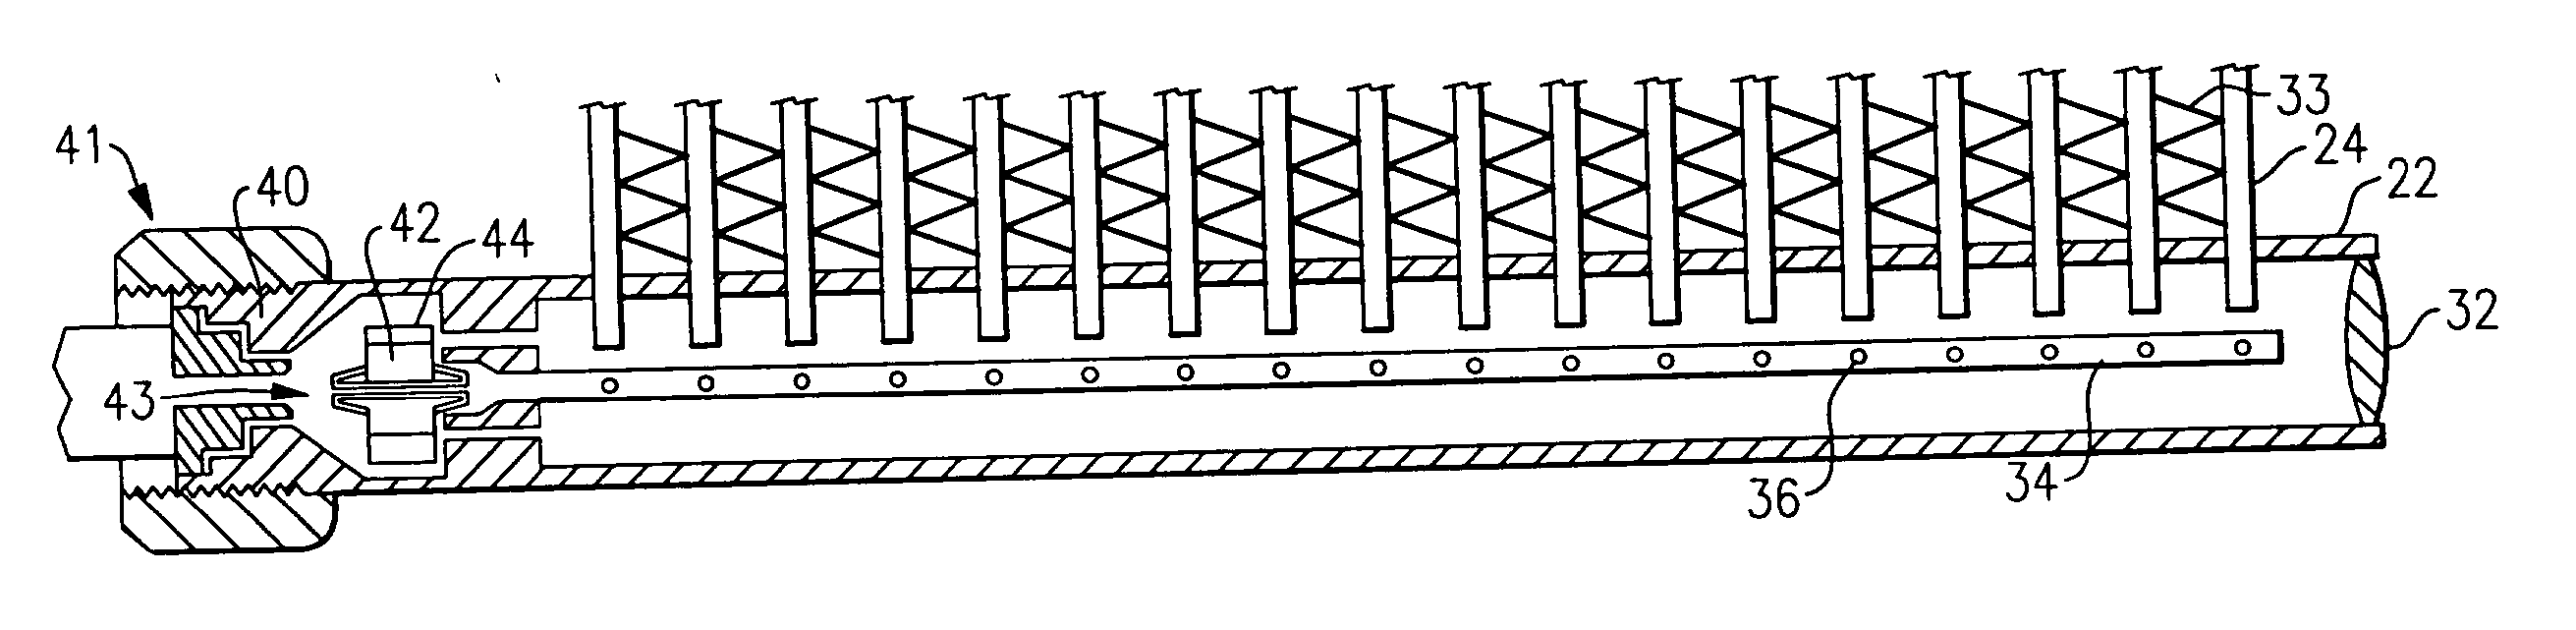 Tube Insert and Bi-Flow Arrangement for a Header of a Heat Pump